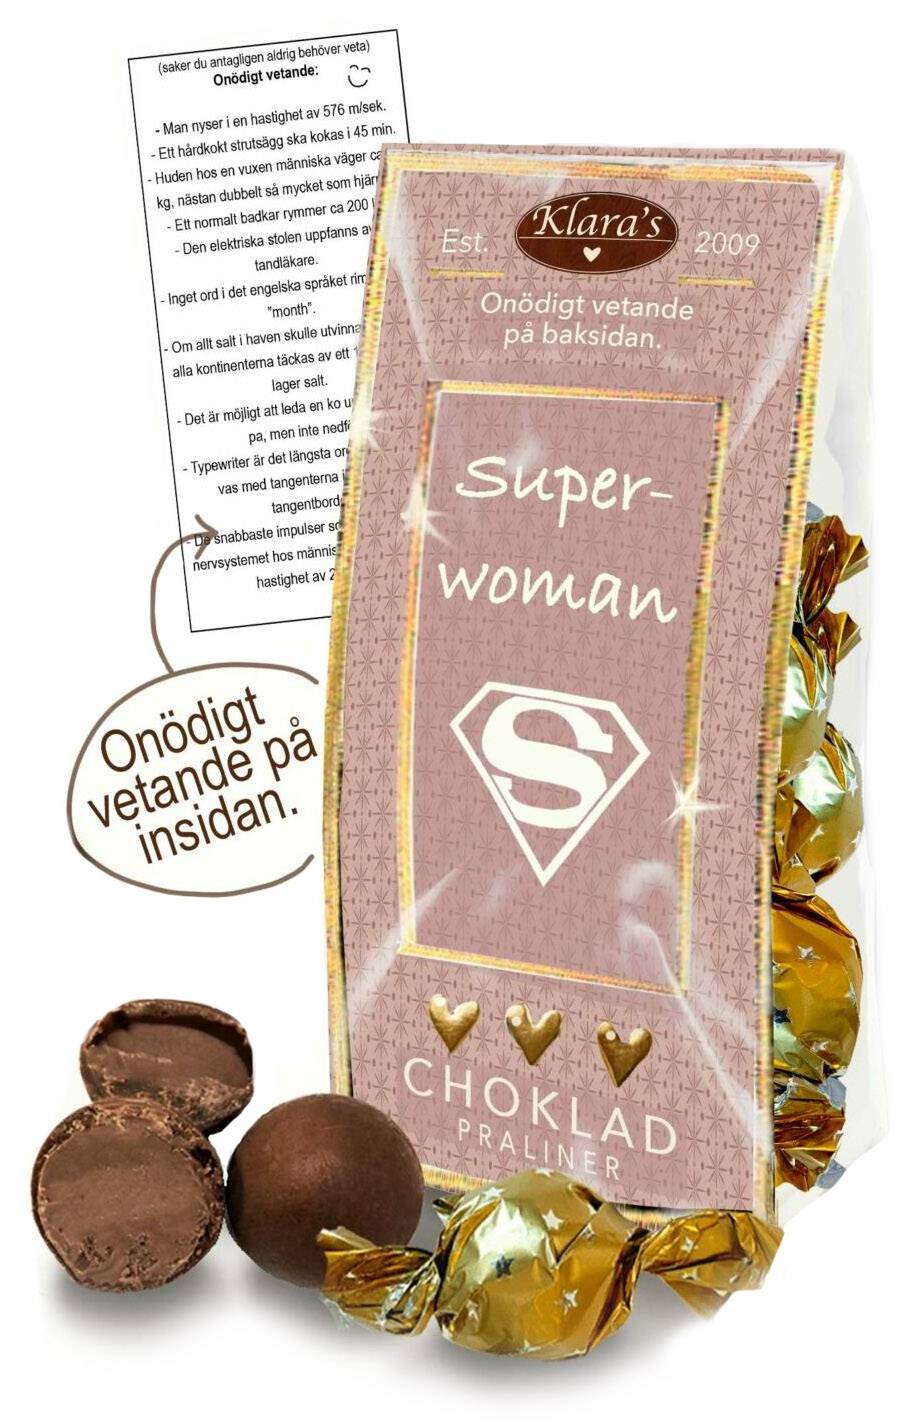 Chokladpraliner Superwoman - påse med onödigt vetande • Pryloteket